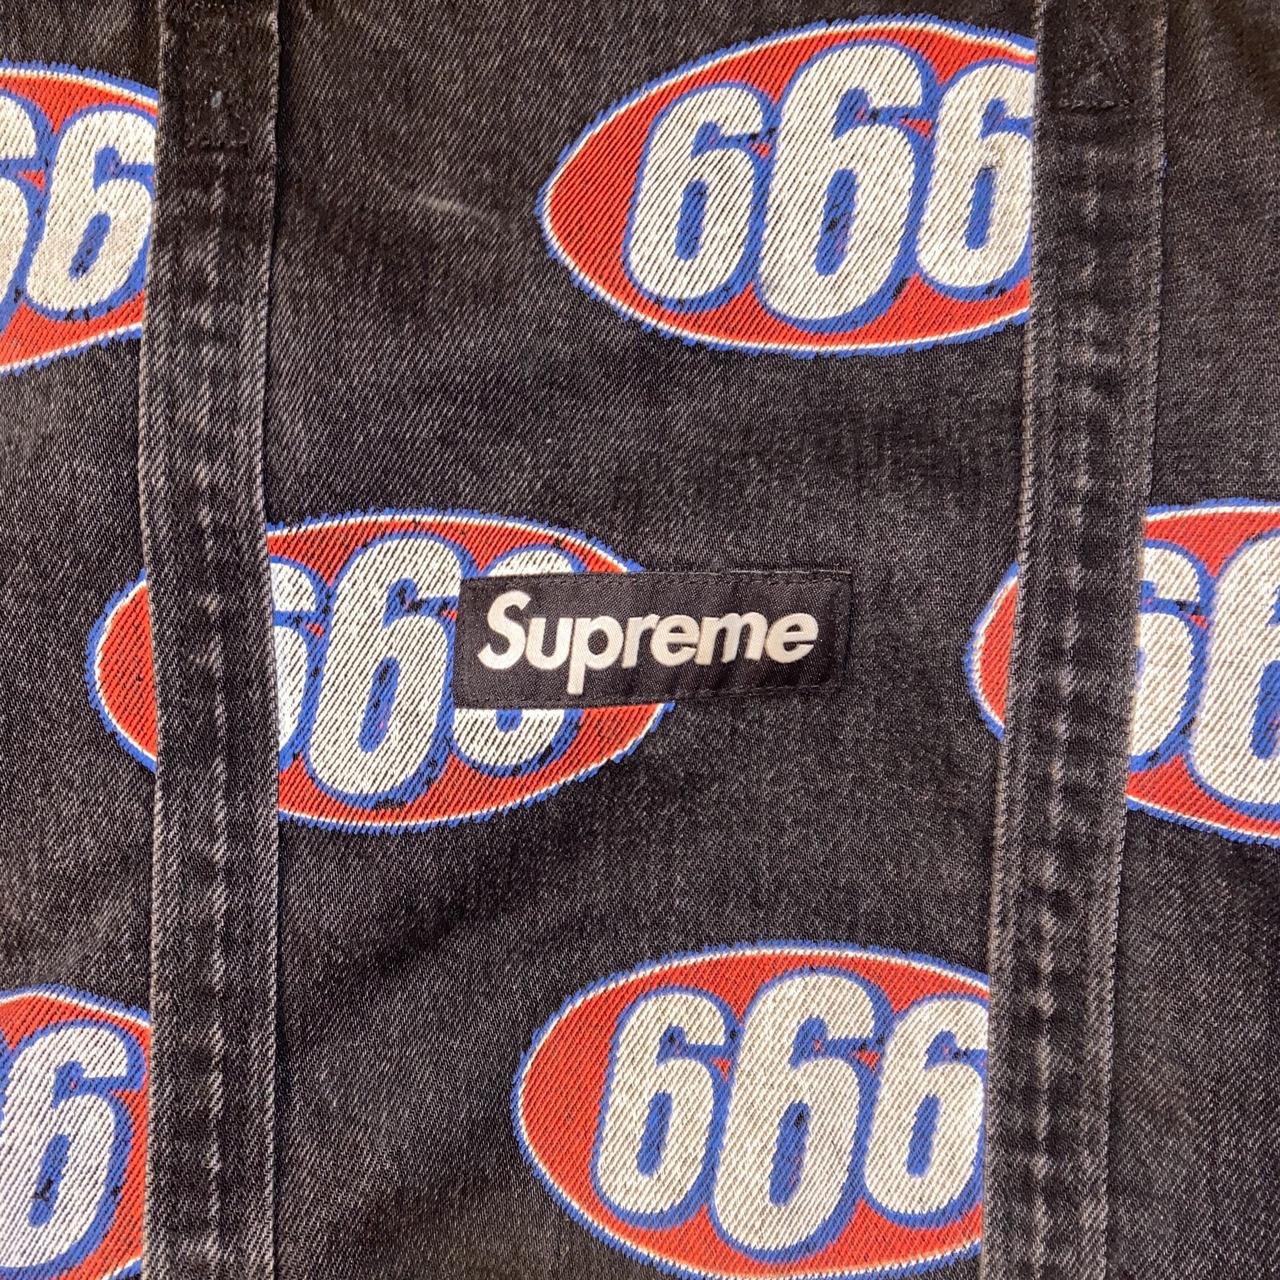 Supreme 666 tote bag rare fw12 - Depop